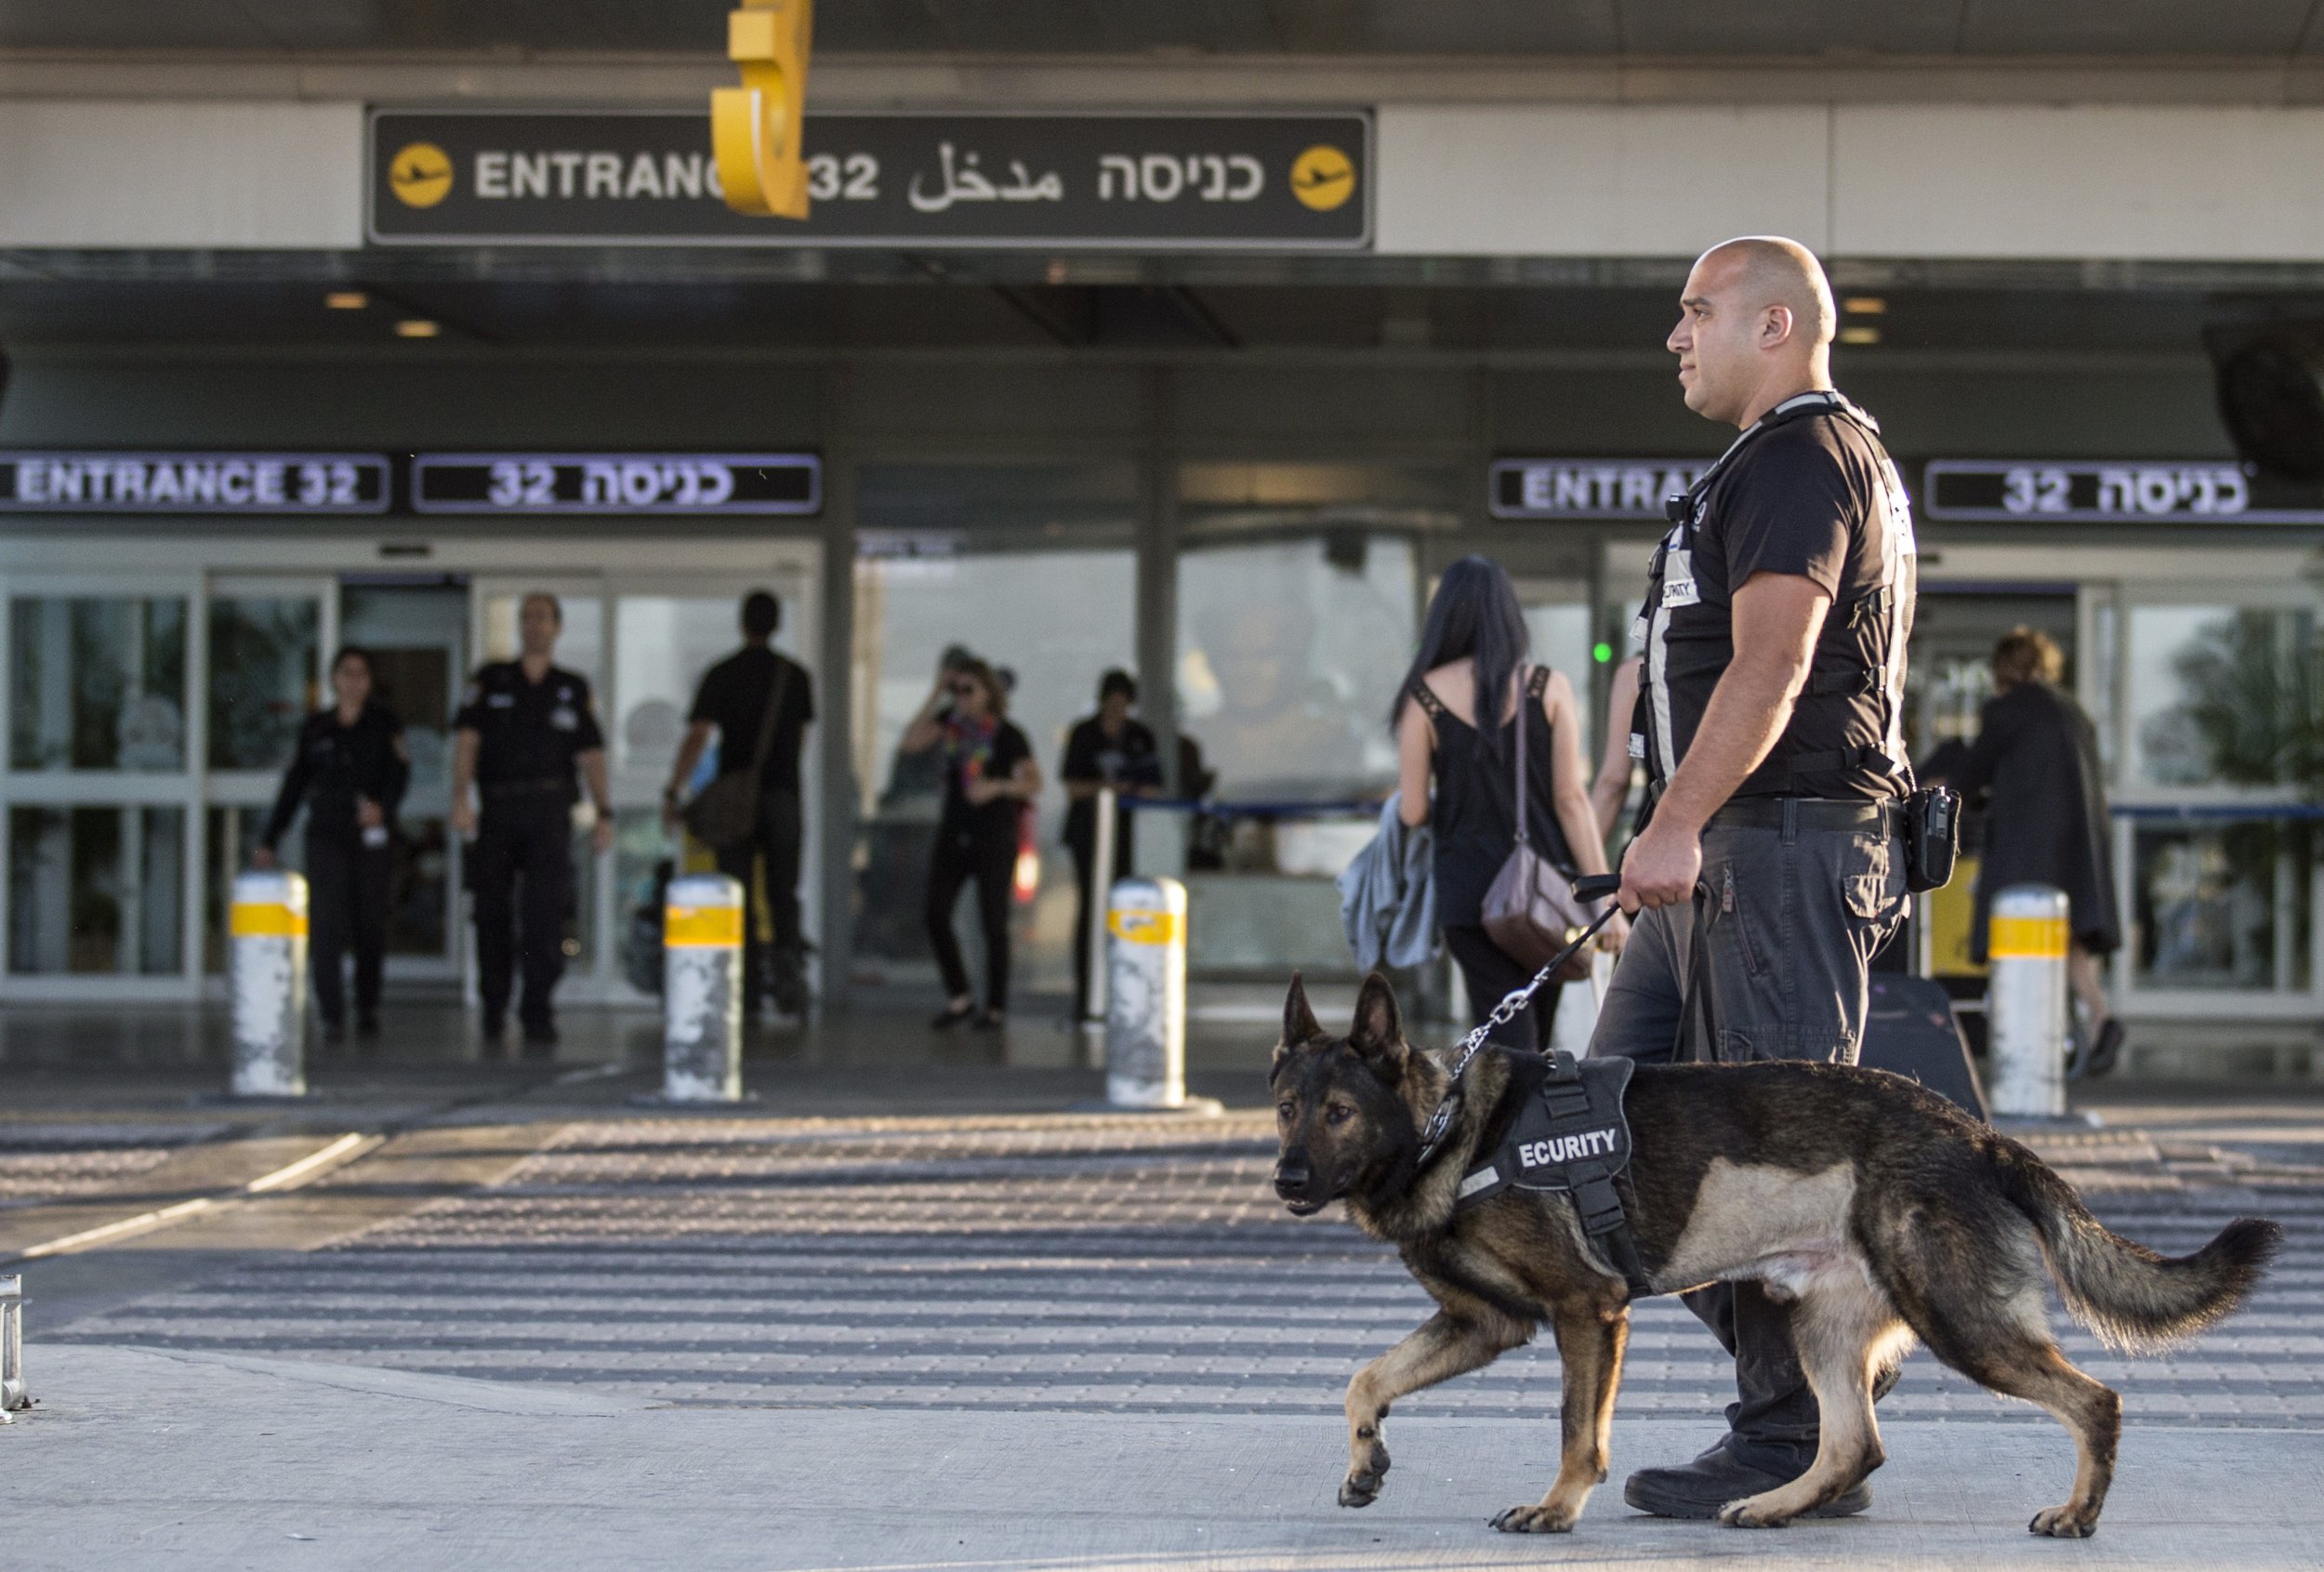 аэропорт бен гурион в израиле